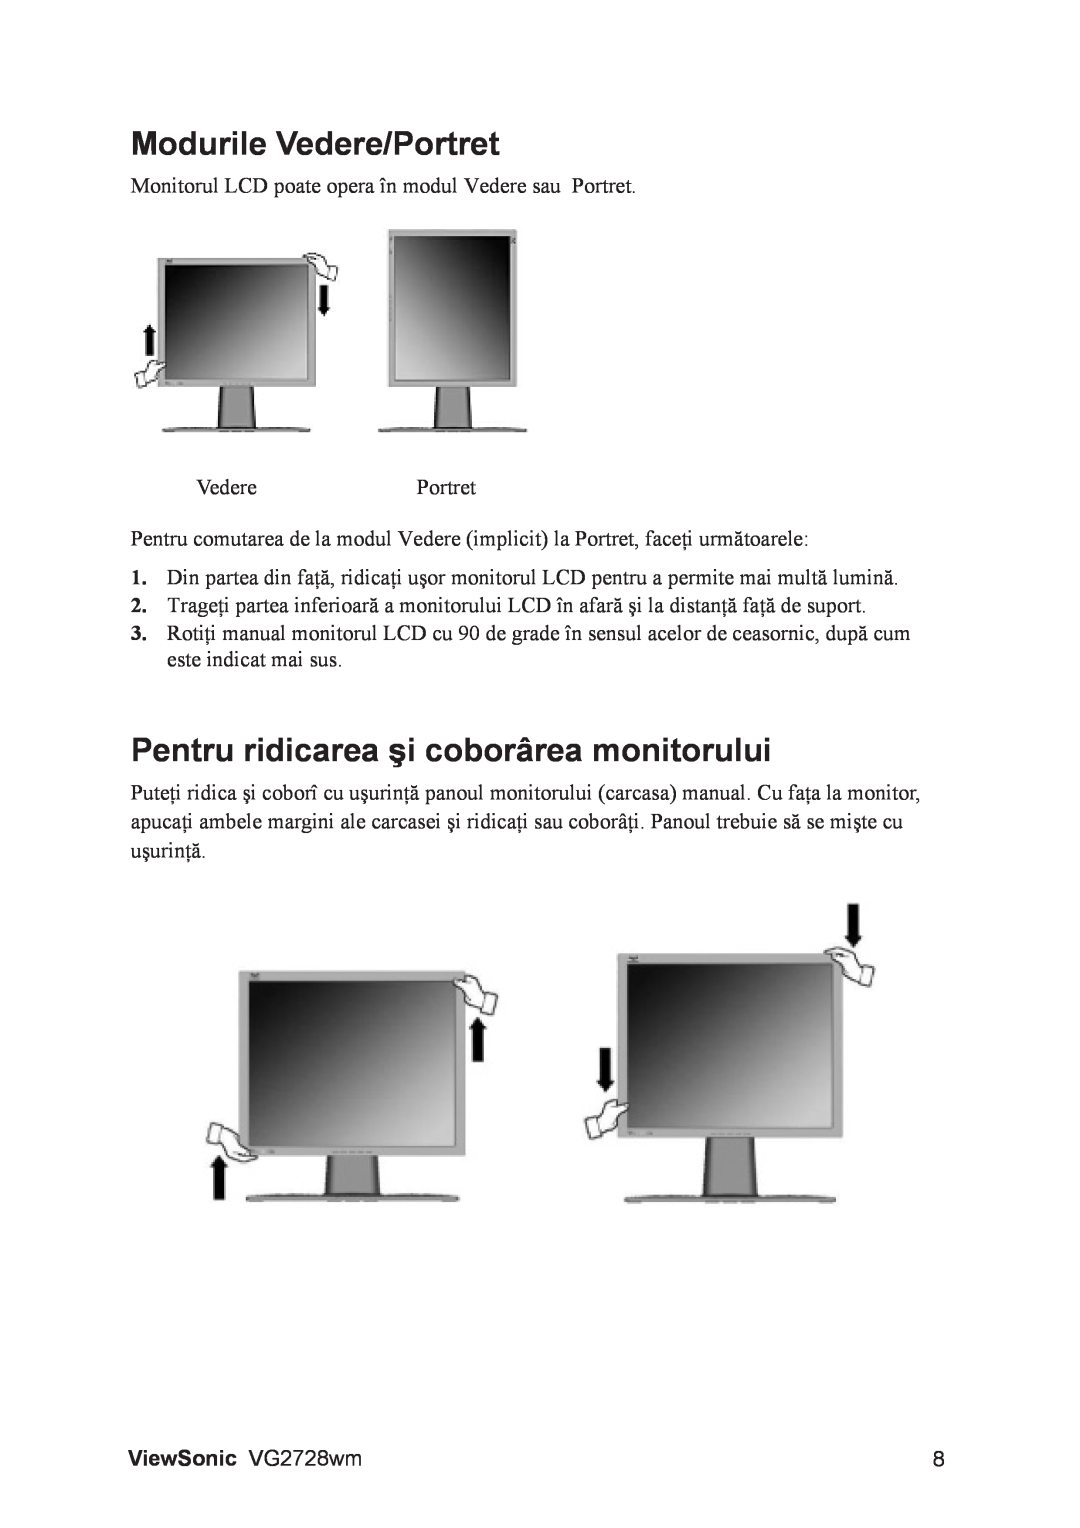 ViewSonic VS12844 manual Modurile Vedere/Portret, Pentru ridicarea şi coborârea monitorului, ViewSonic VG2728wm 